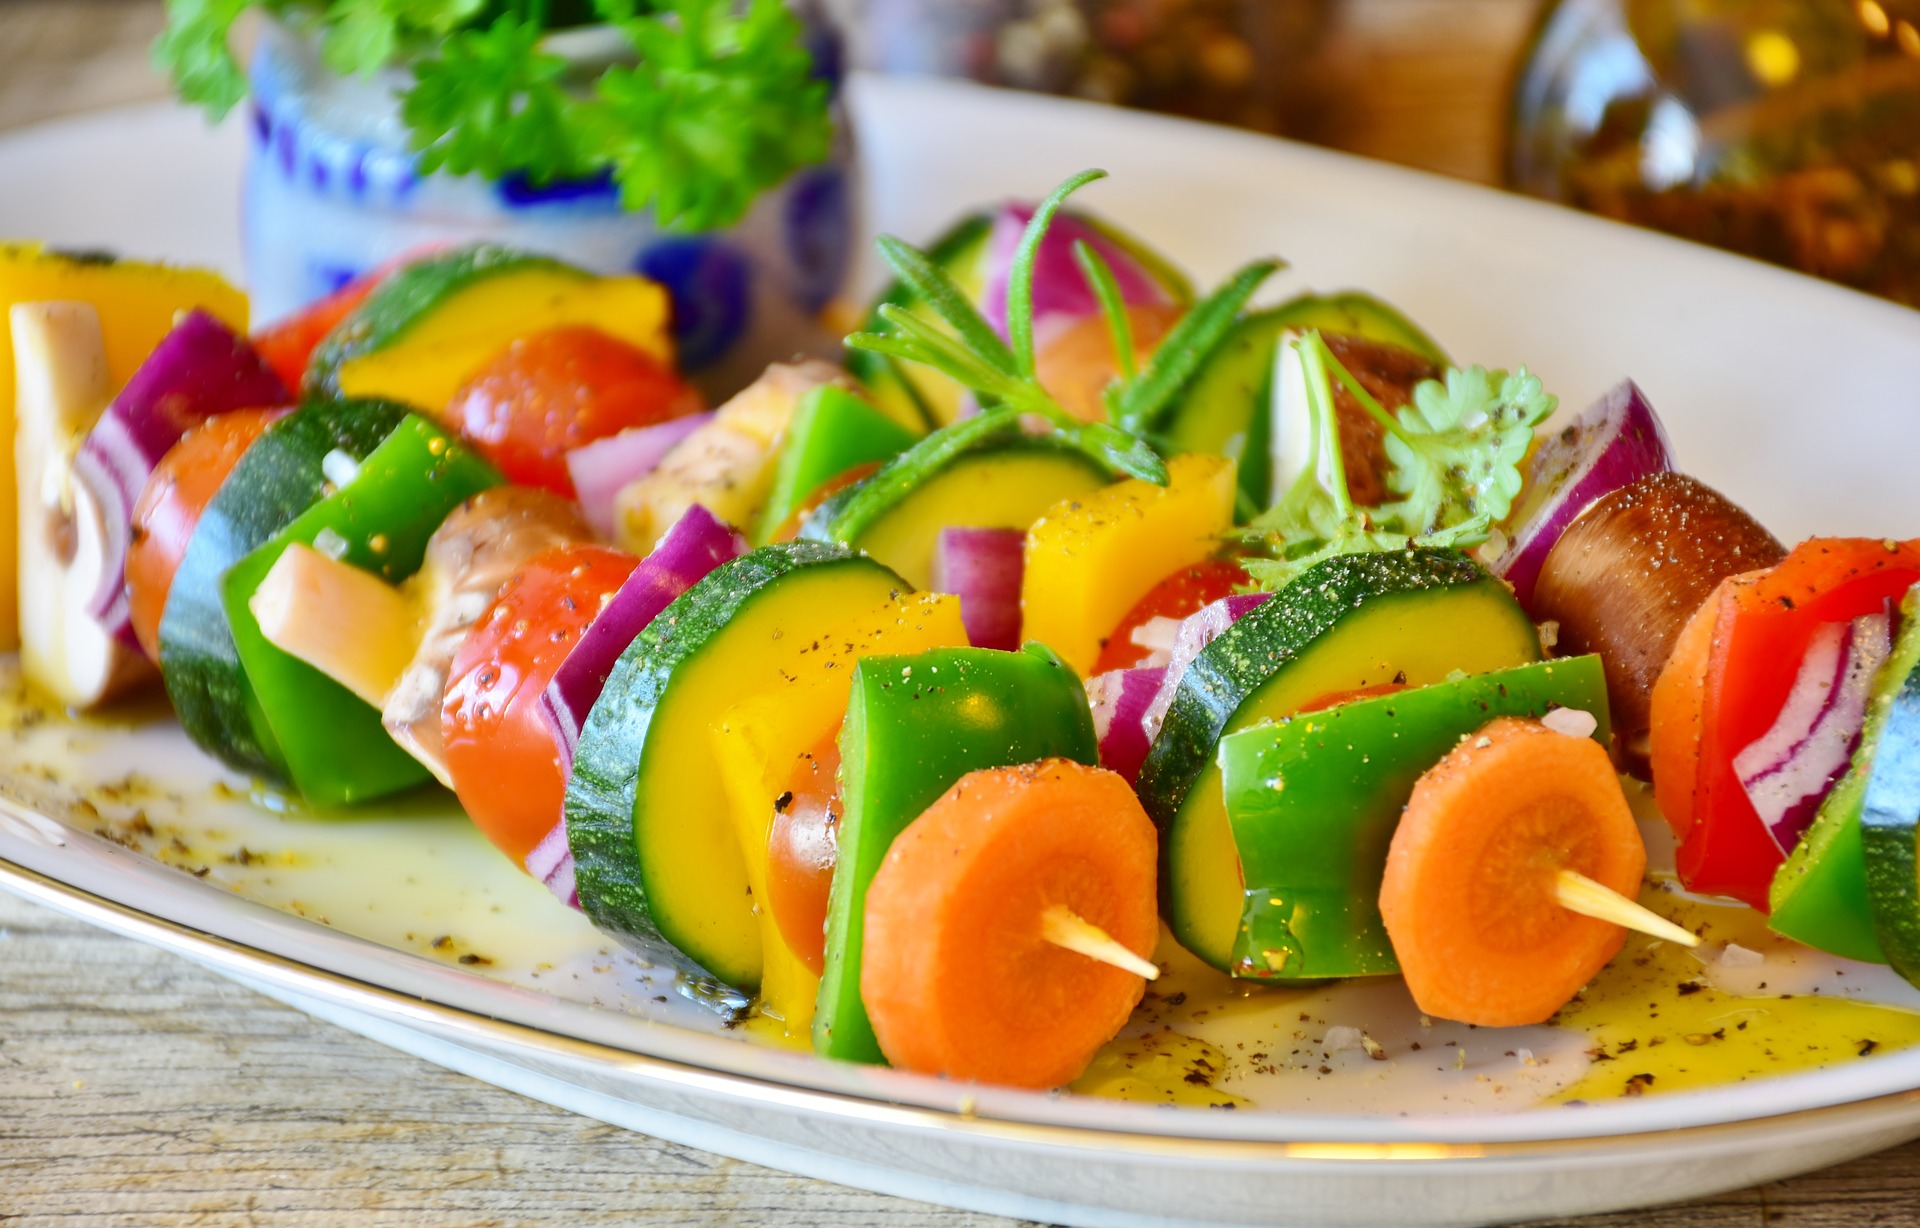 healthy food vegetable skewer kabob